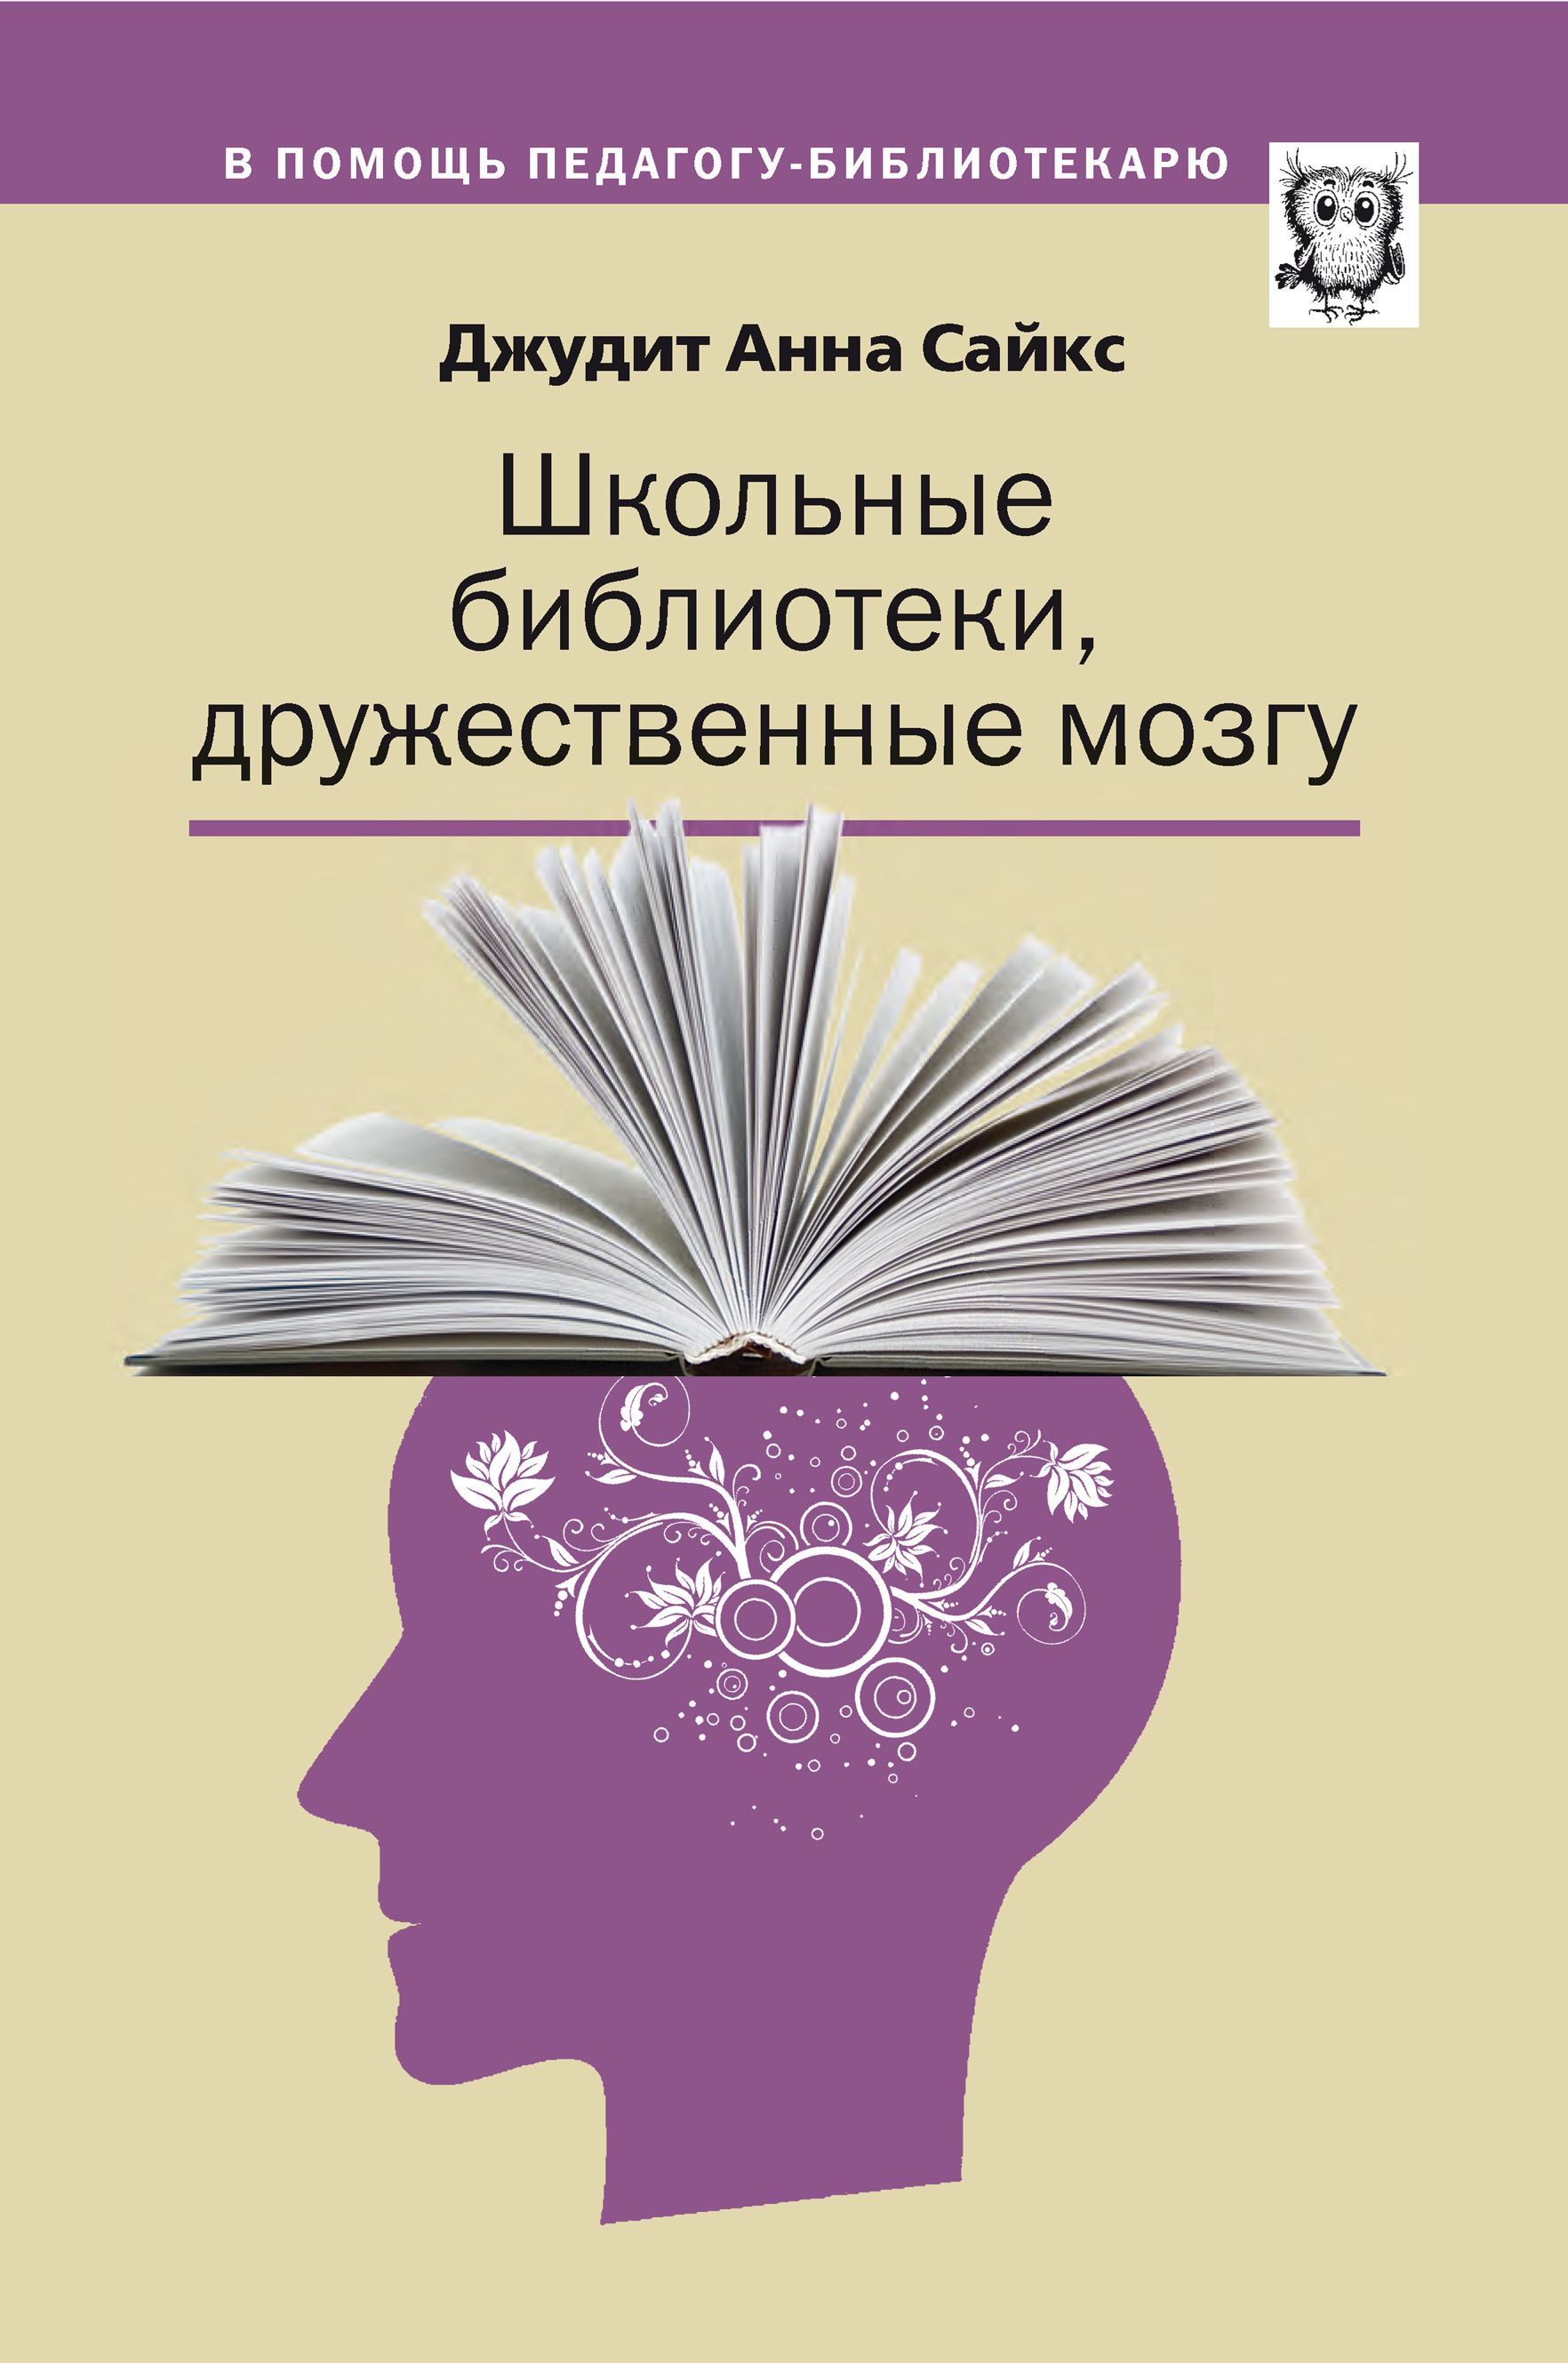 Книга Школьные библиотеки, дружественные мозгу из серии , созданная Джудит Сайкс, может относится к жанру Педагогика, Прочая образовательная литература. Стоимость электронной книги Школьные библиотеки, дружественные мозгу с идентификатором 30480479 составляет 250.00 руб.